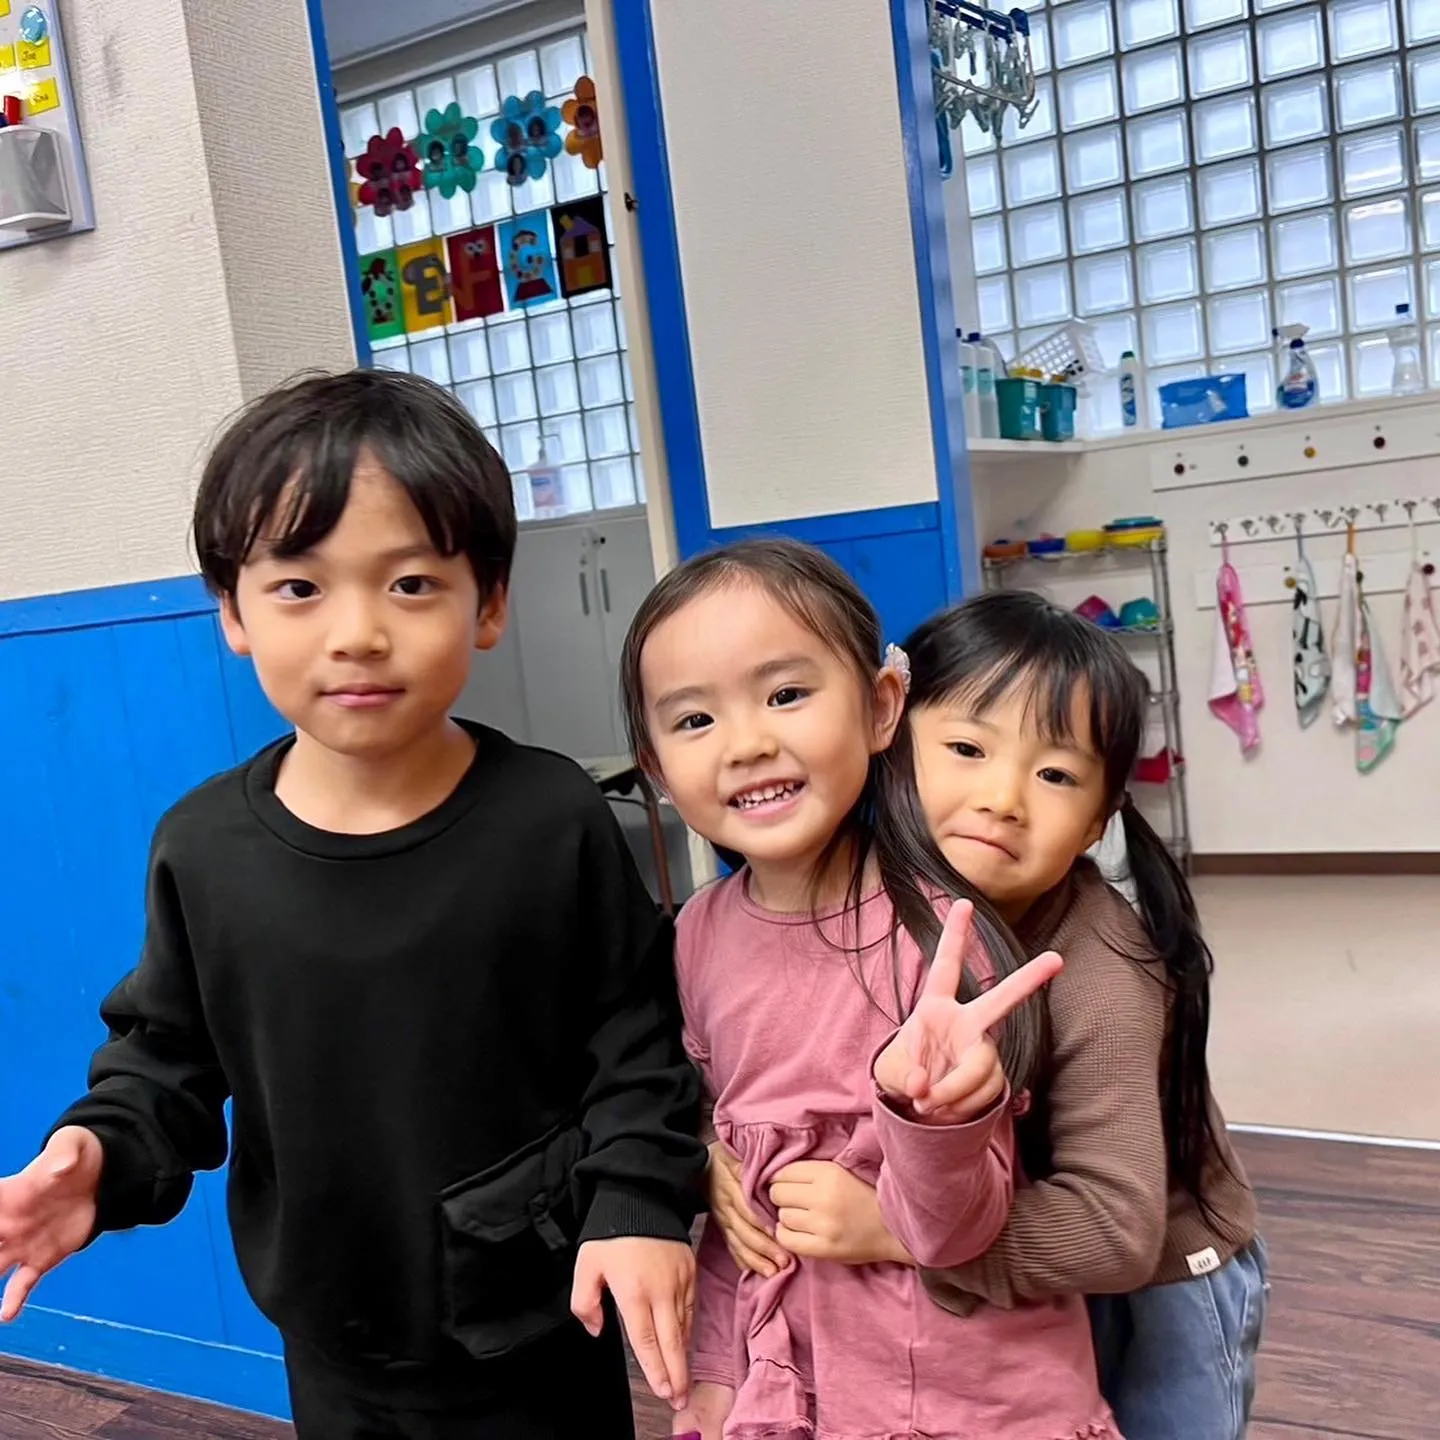 10/31(火) Kinder class today 🎃👻...